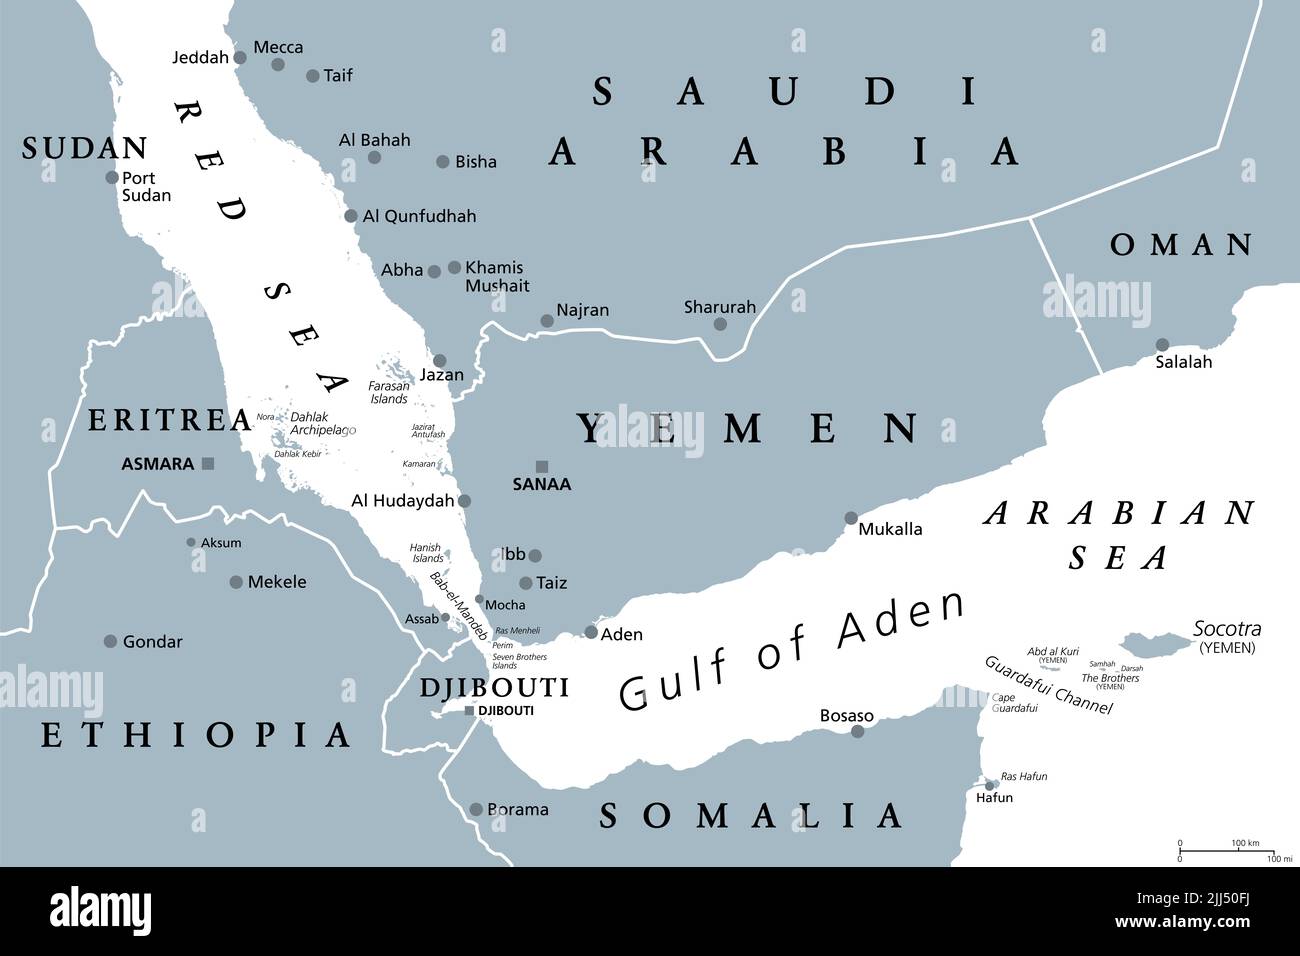 Area del Golfo di Aden, mappa politica grigia. Golfo tra Yemen, Gibuti, canale di Guardafui, Socotra e Somalia, che collega il Mar Arabico con il Mar Rosso. Foto Stock